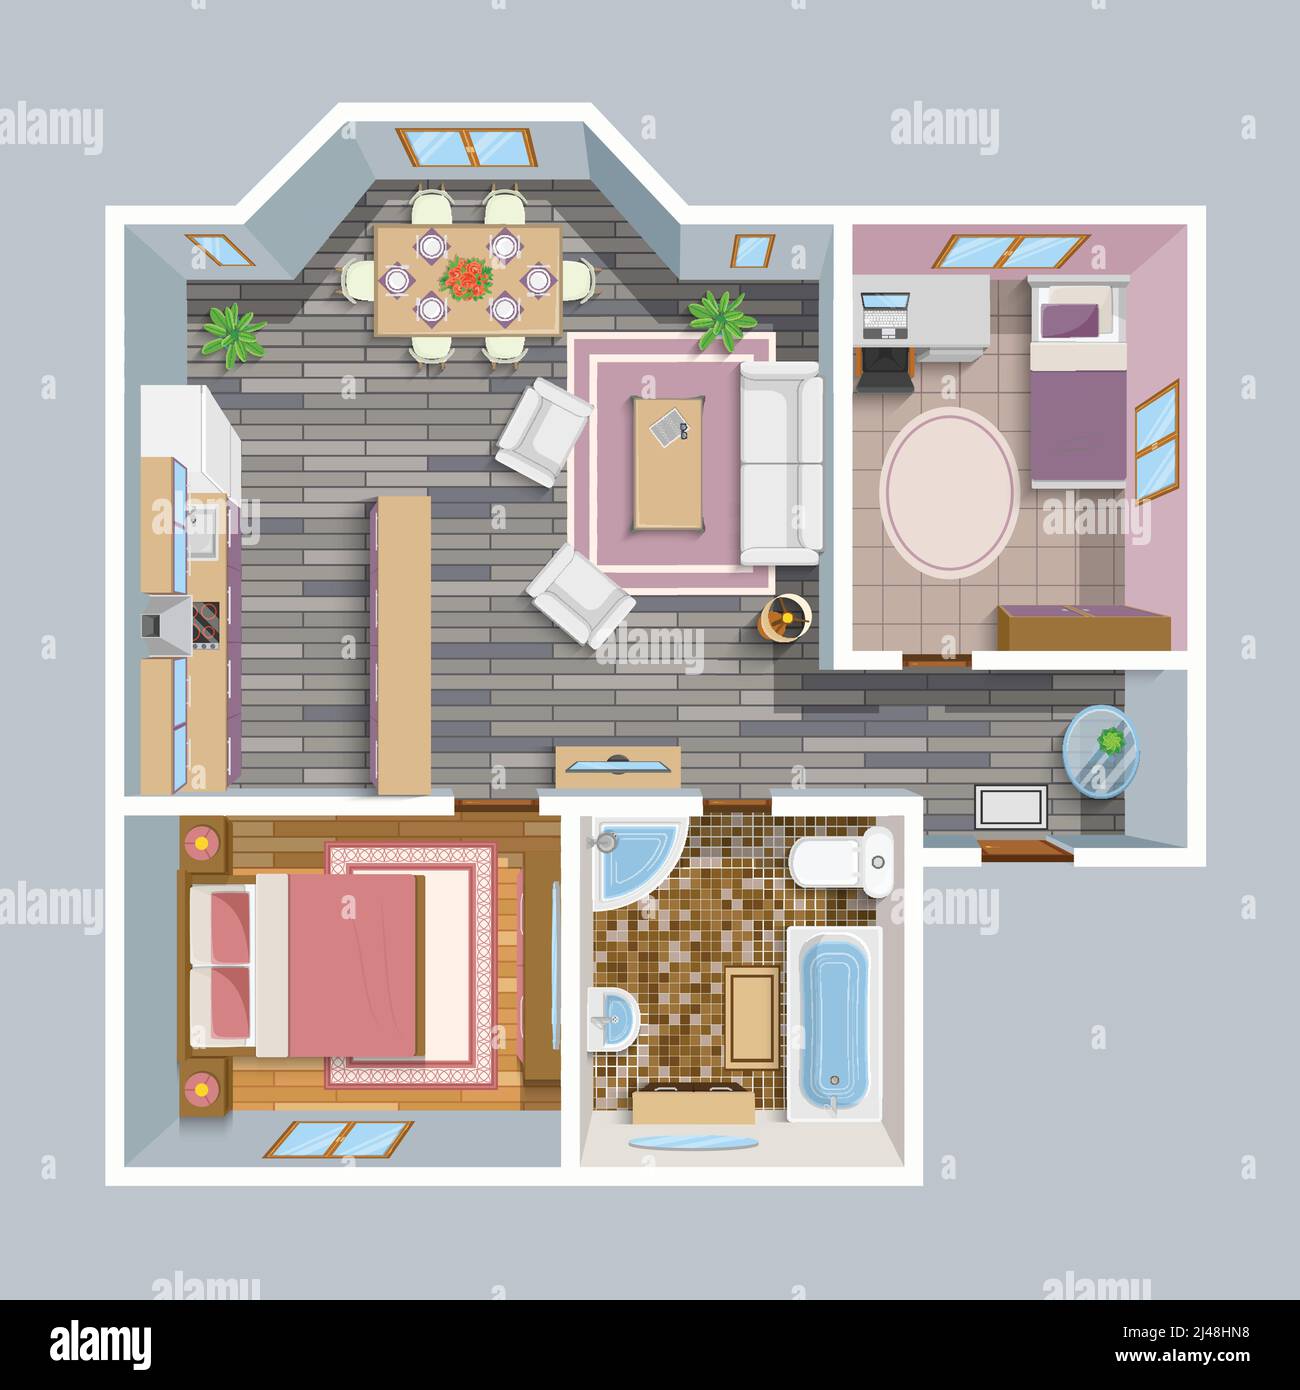 Architektonischer Flachplan Draufsicht mit Wohnzimmer Bad Küche Und Lounge Möbel Vektor Illustration Stock Vektor